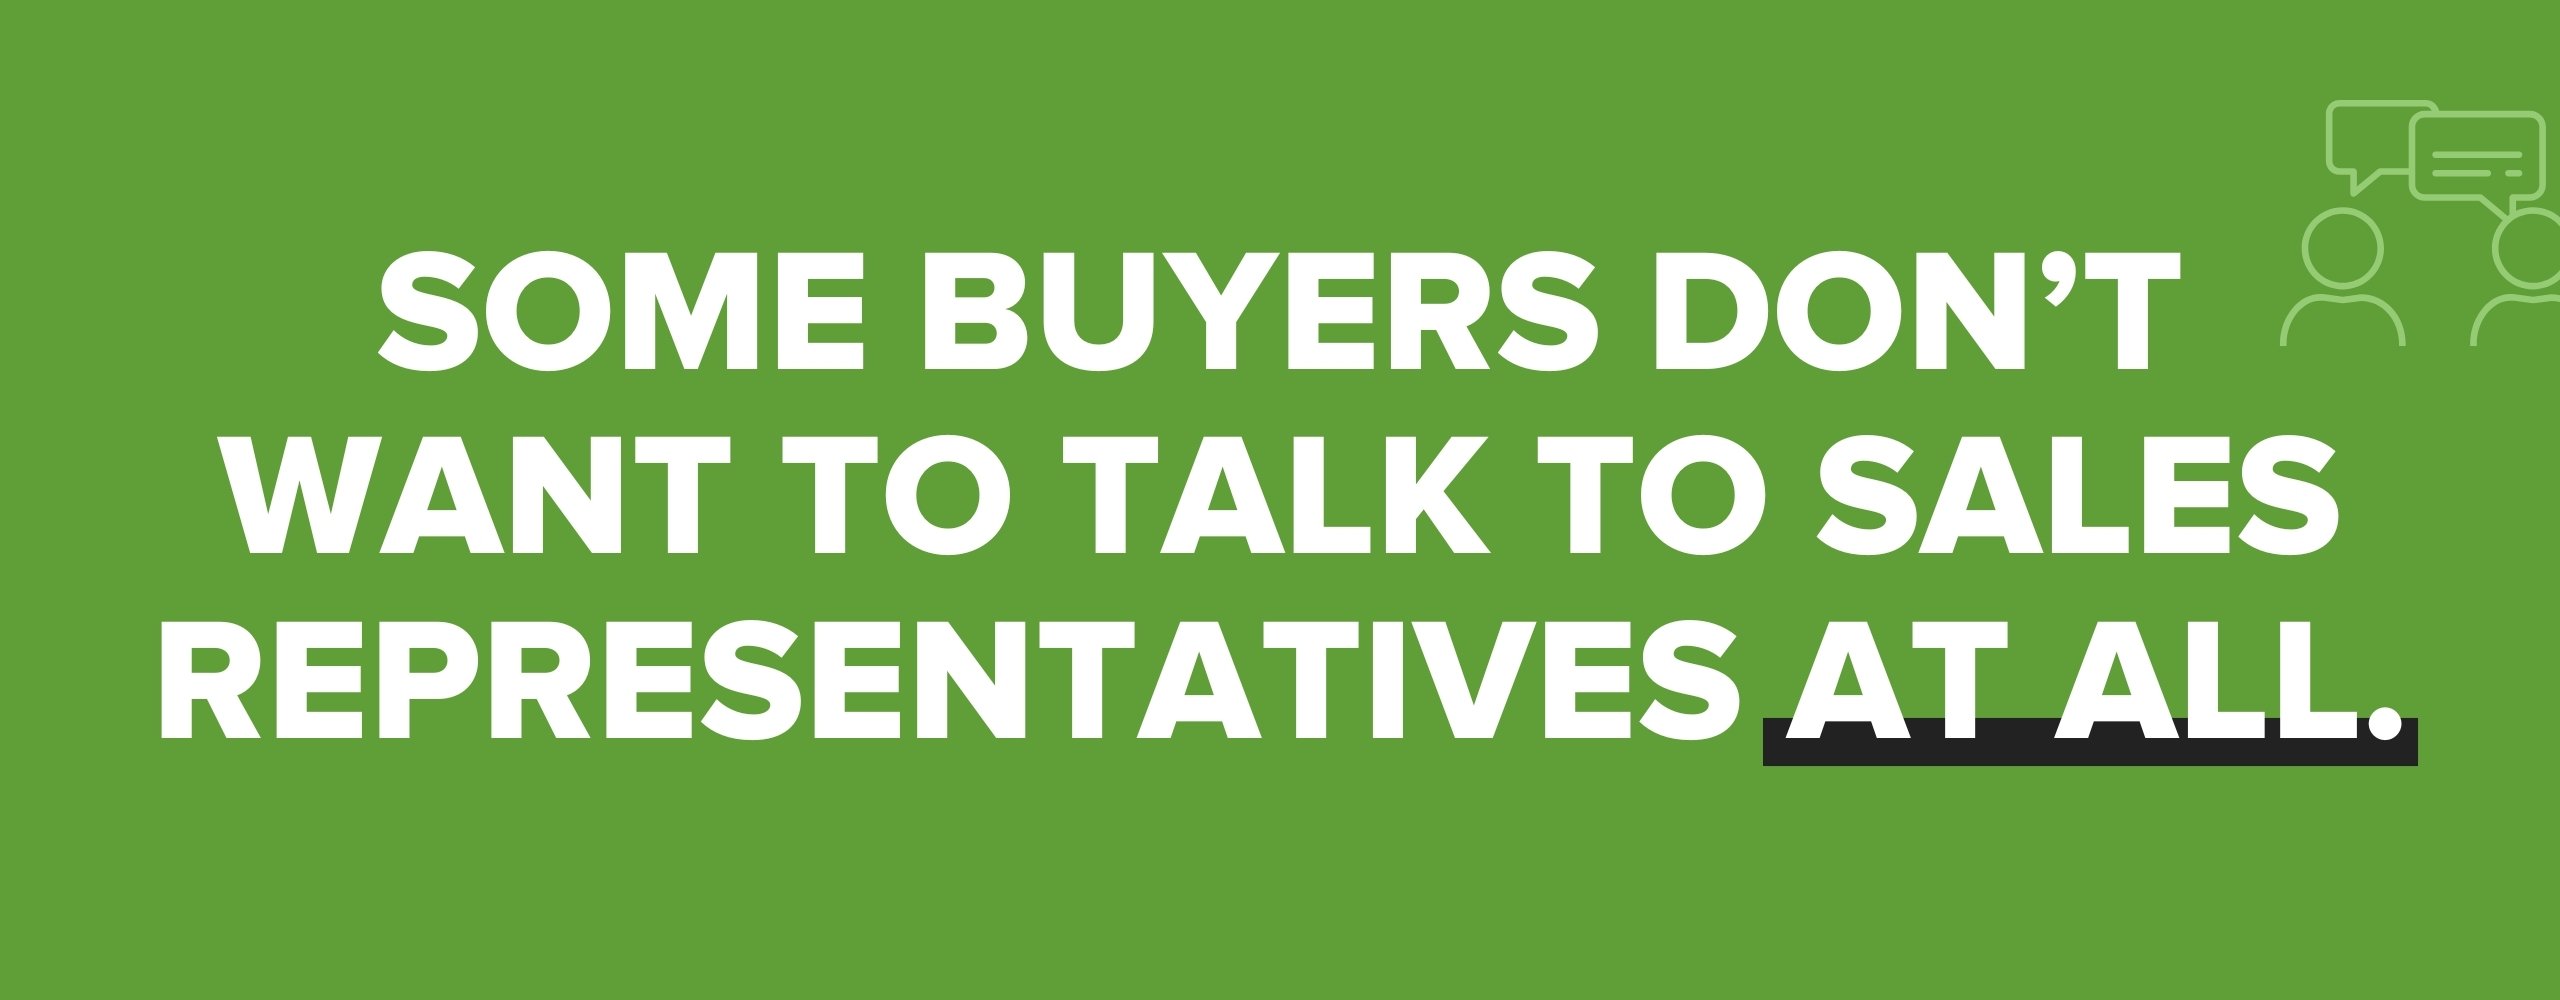 buyers-no-talk-sales